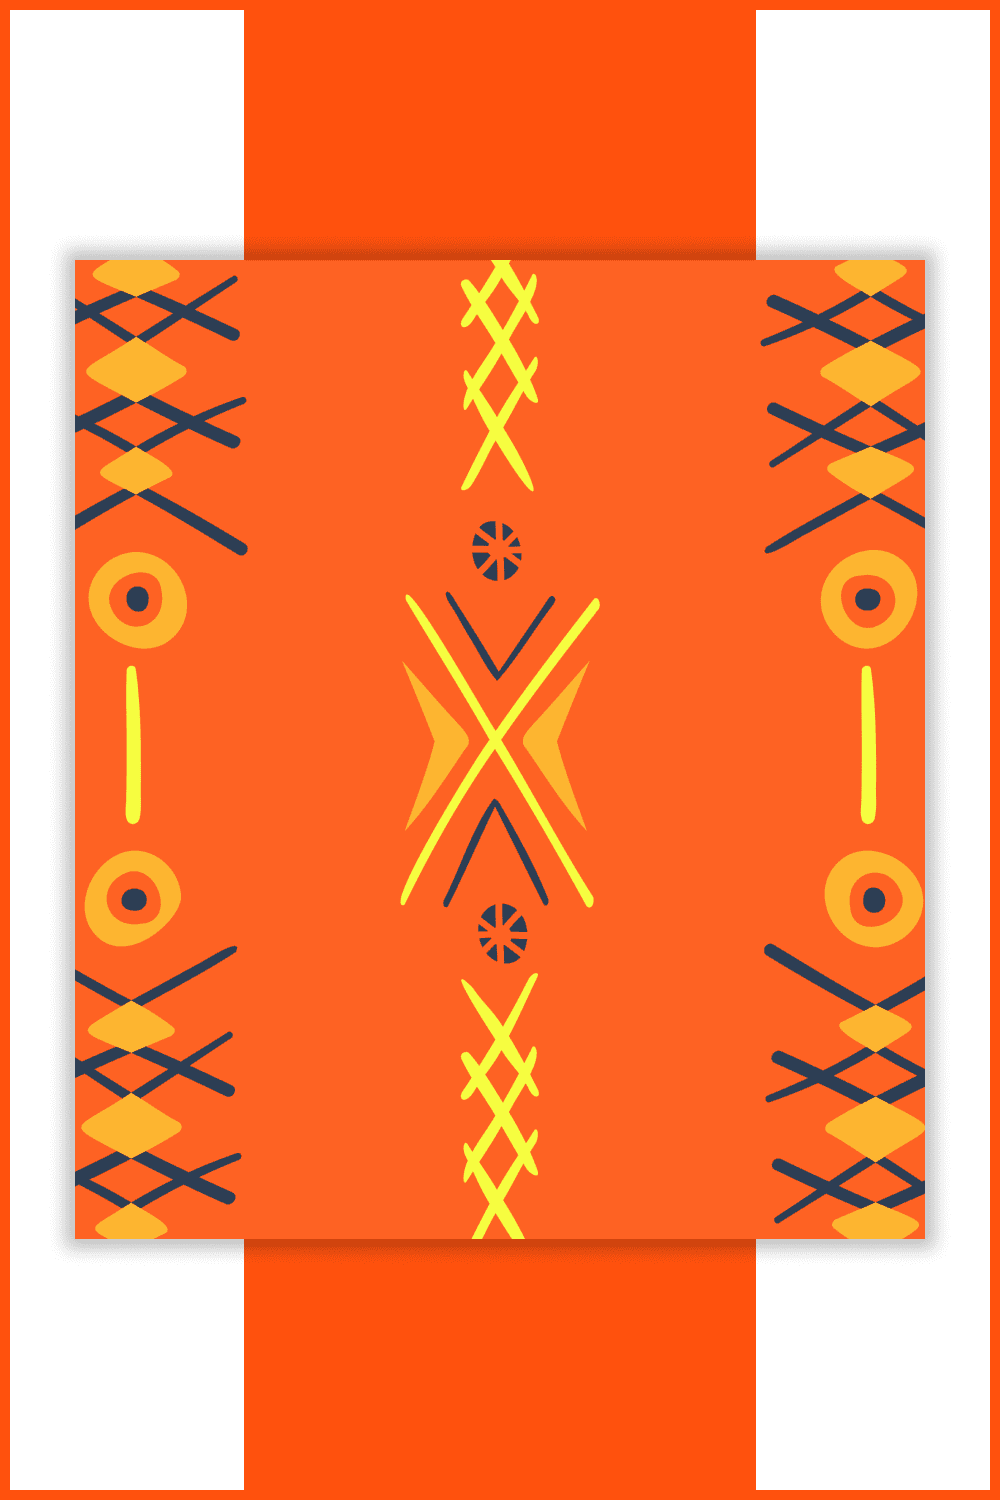 Image of Aztec geometric pattern on orange background.